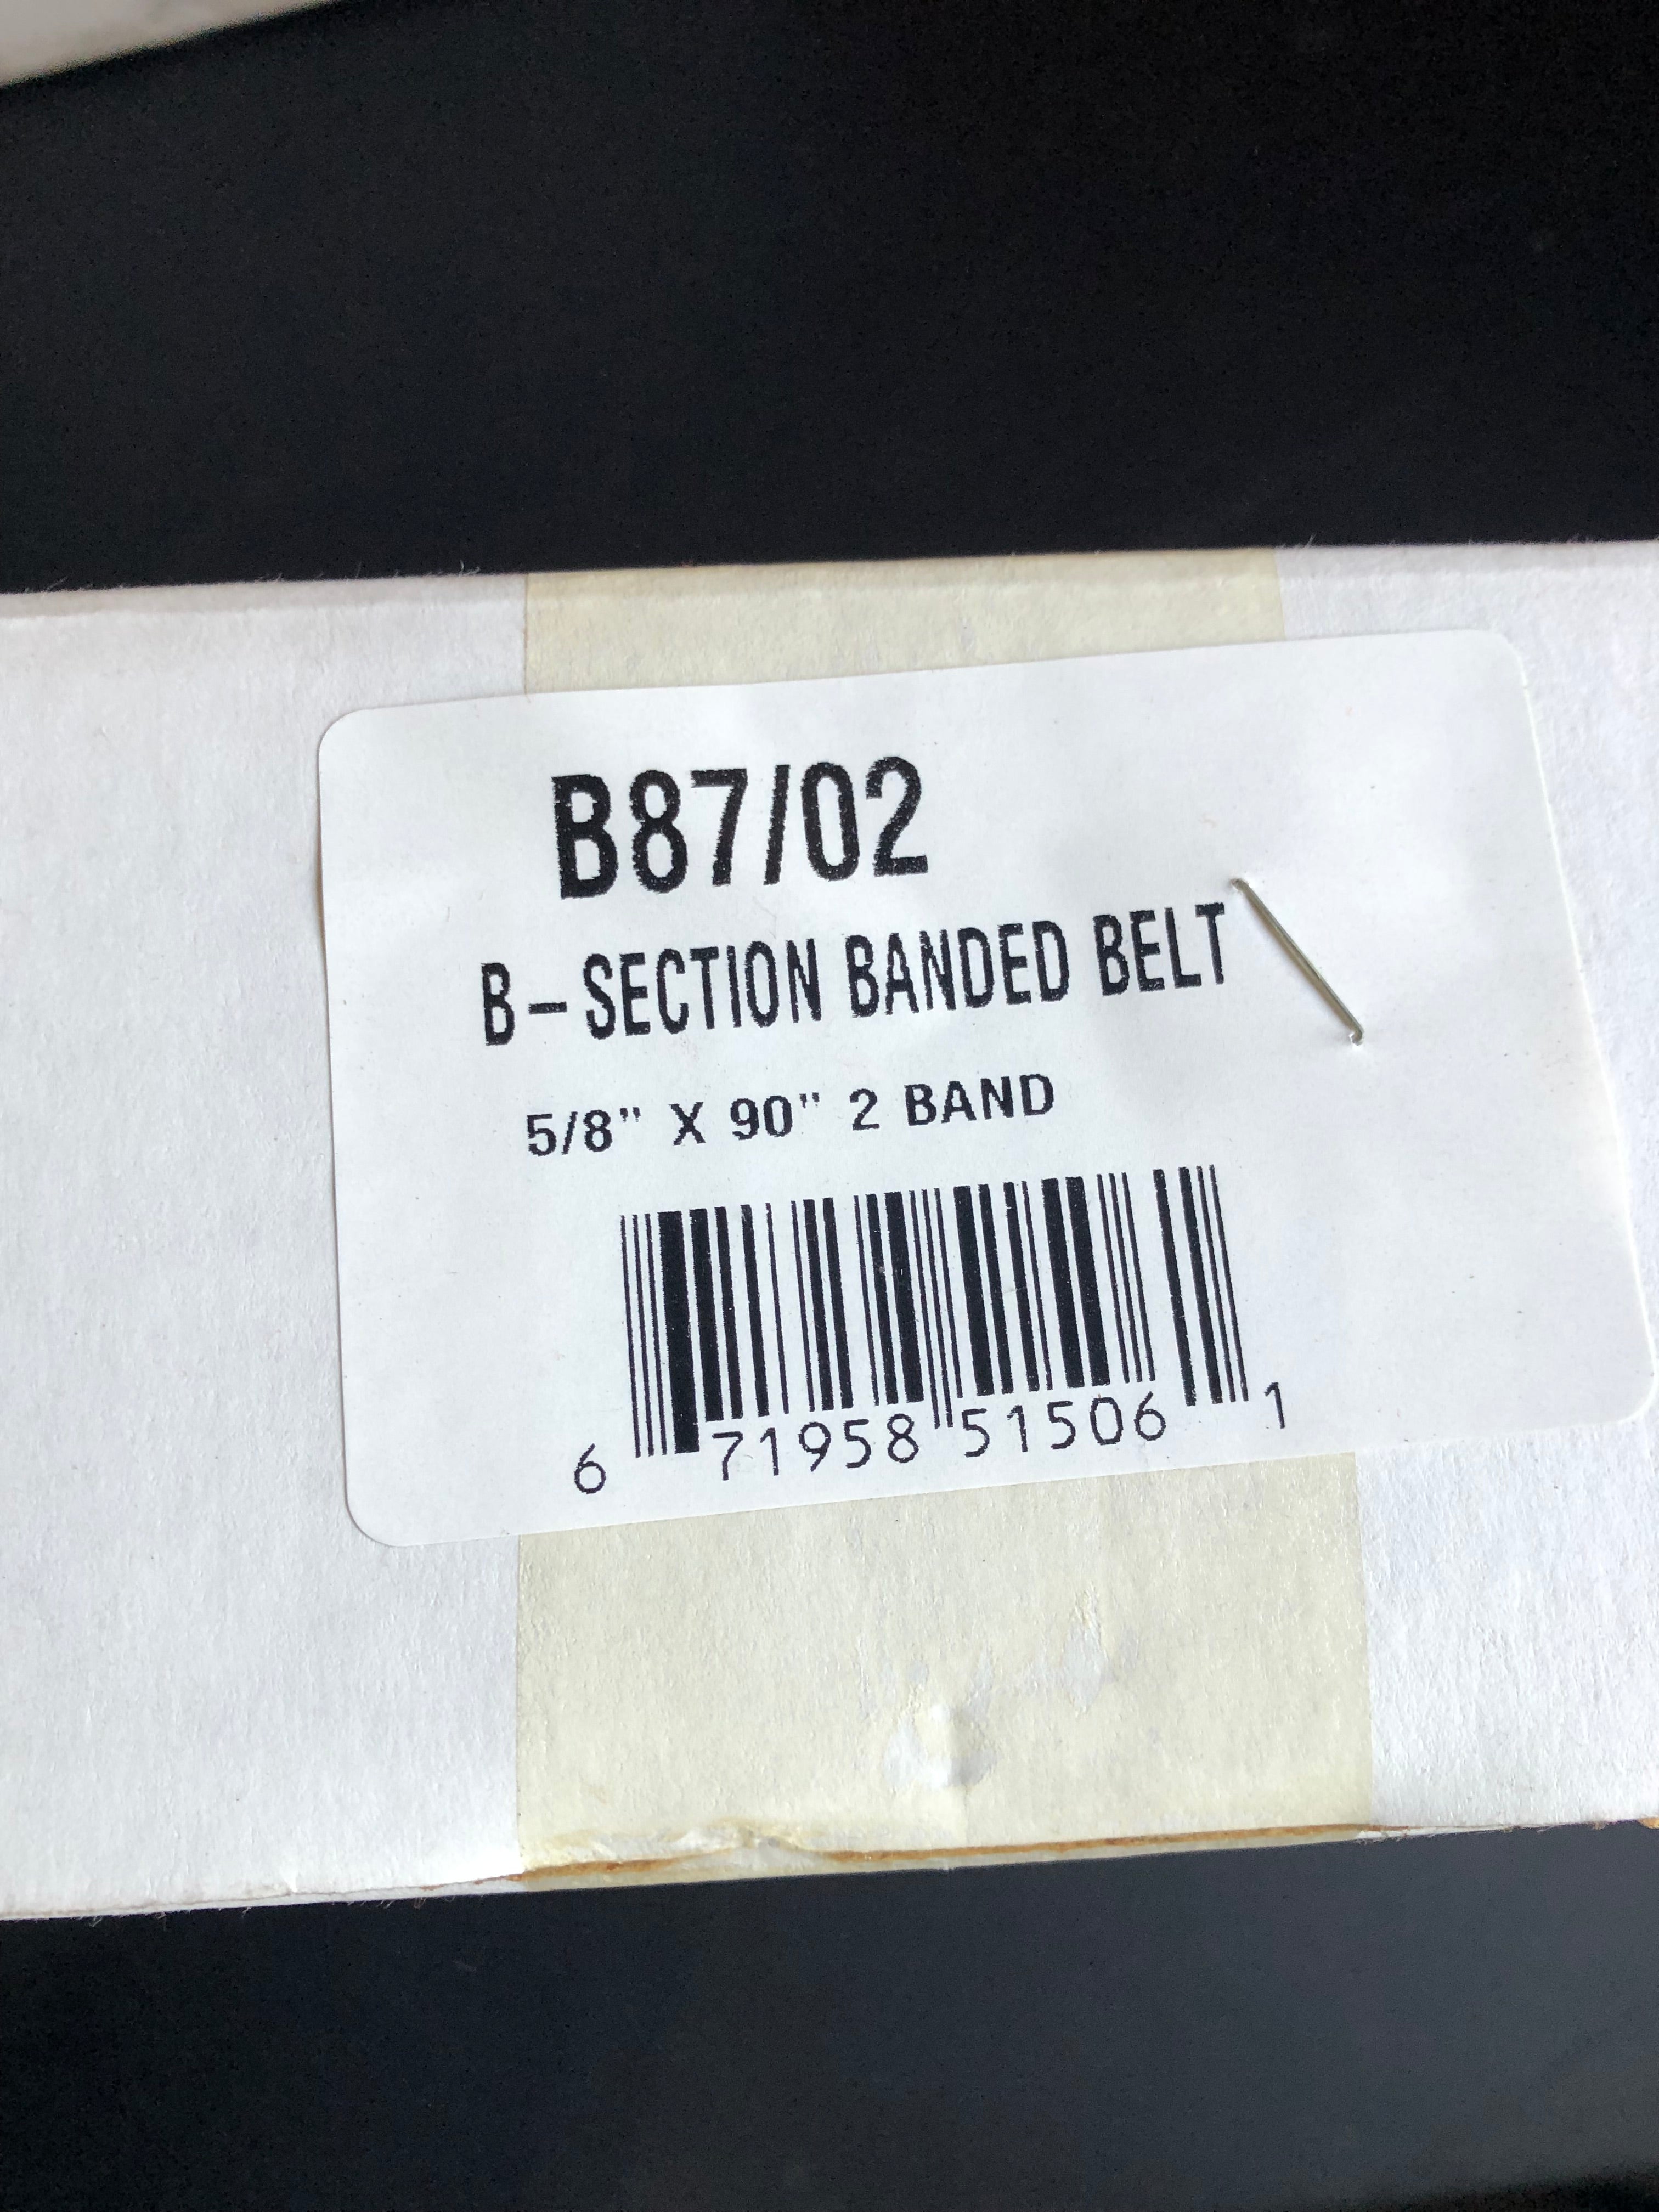 B87/02 Banded Belt